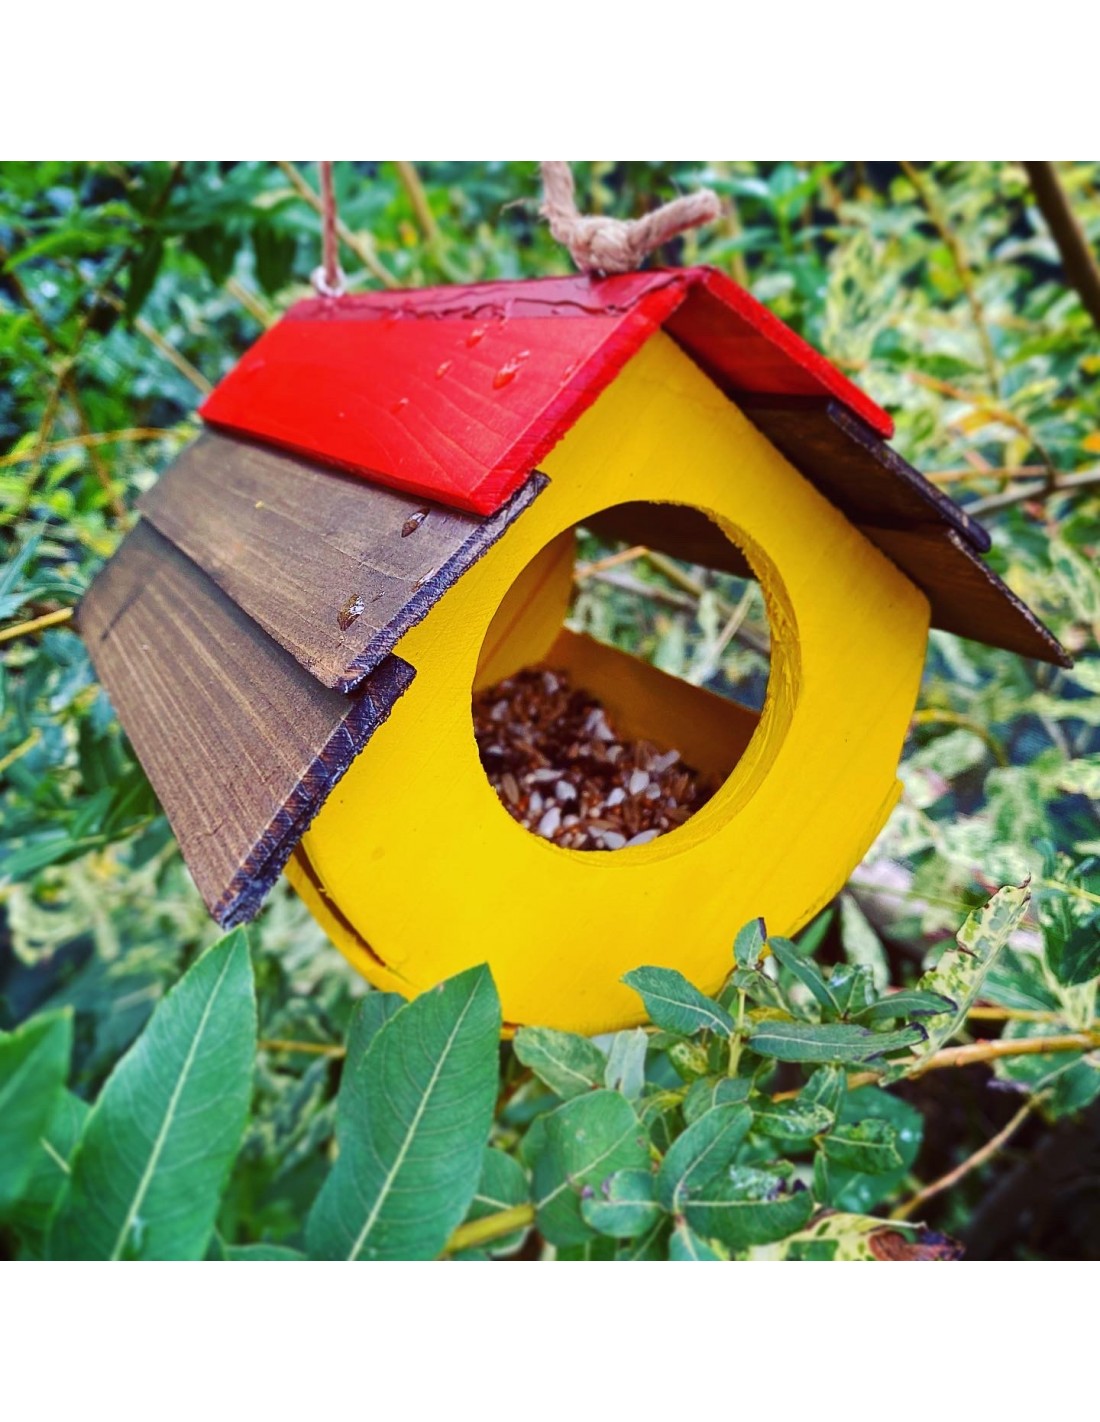 Mangiatoia in legno per uccelli selvatici con tetto in betulla